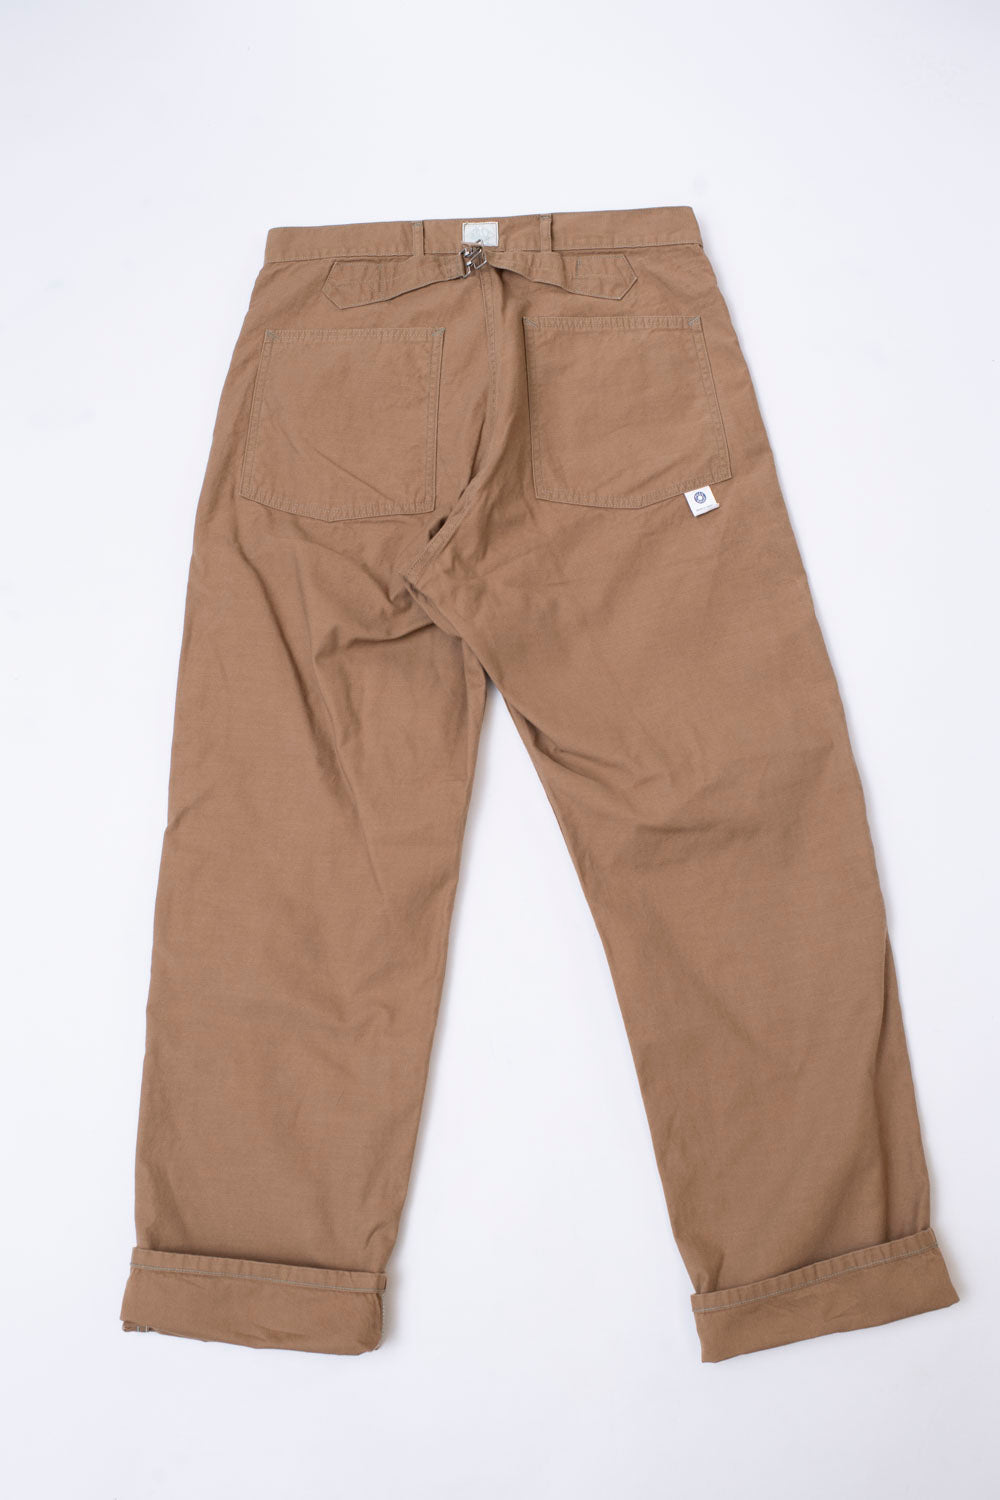 Vintage Workwear Pants Carhartt Pants Dickies Pants All Sizes -  Israel